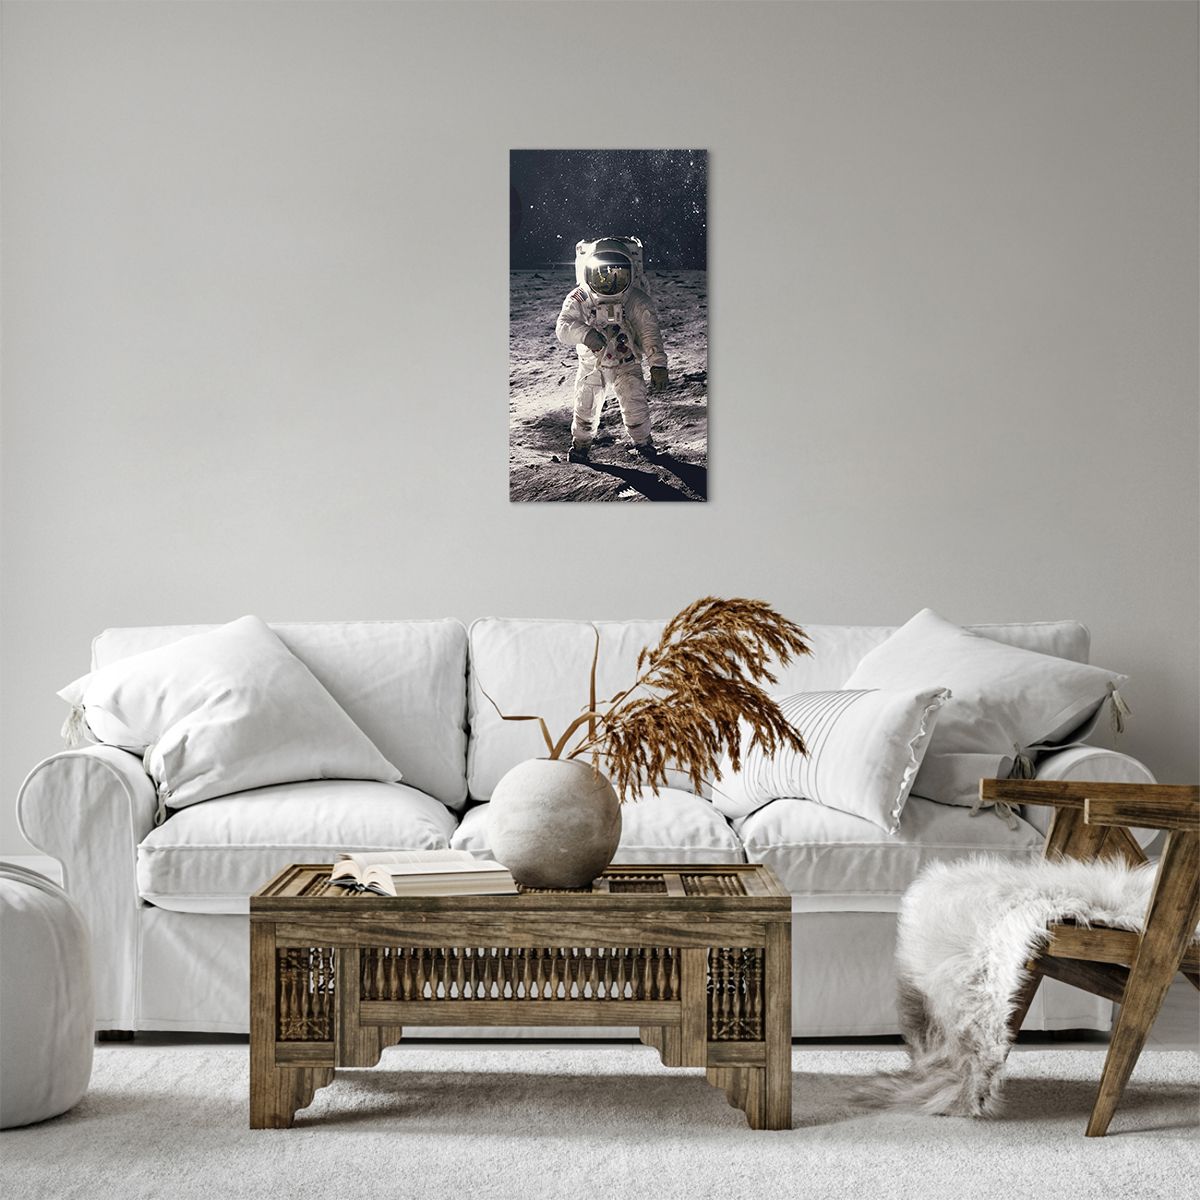 Bild auf Leinwand Abstraktion, Bild auf Leinwand Mann Im Mond, Bild auf Leinwand Astronaut, Bild auf Leinwand Kosmos, Bild auf Leinwand Mond